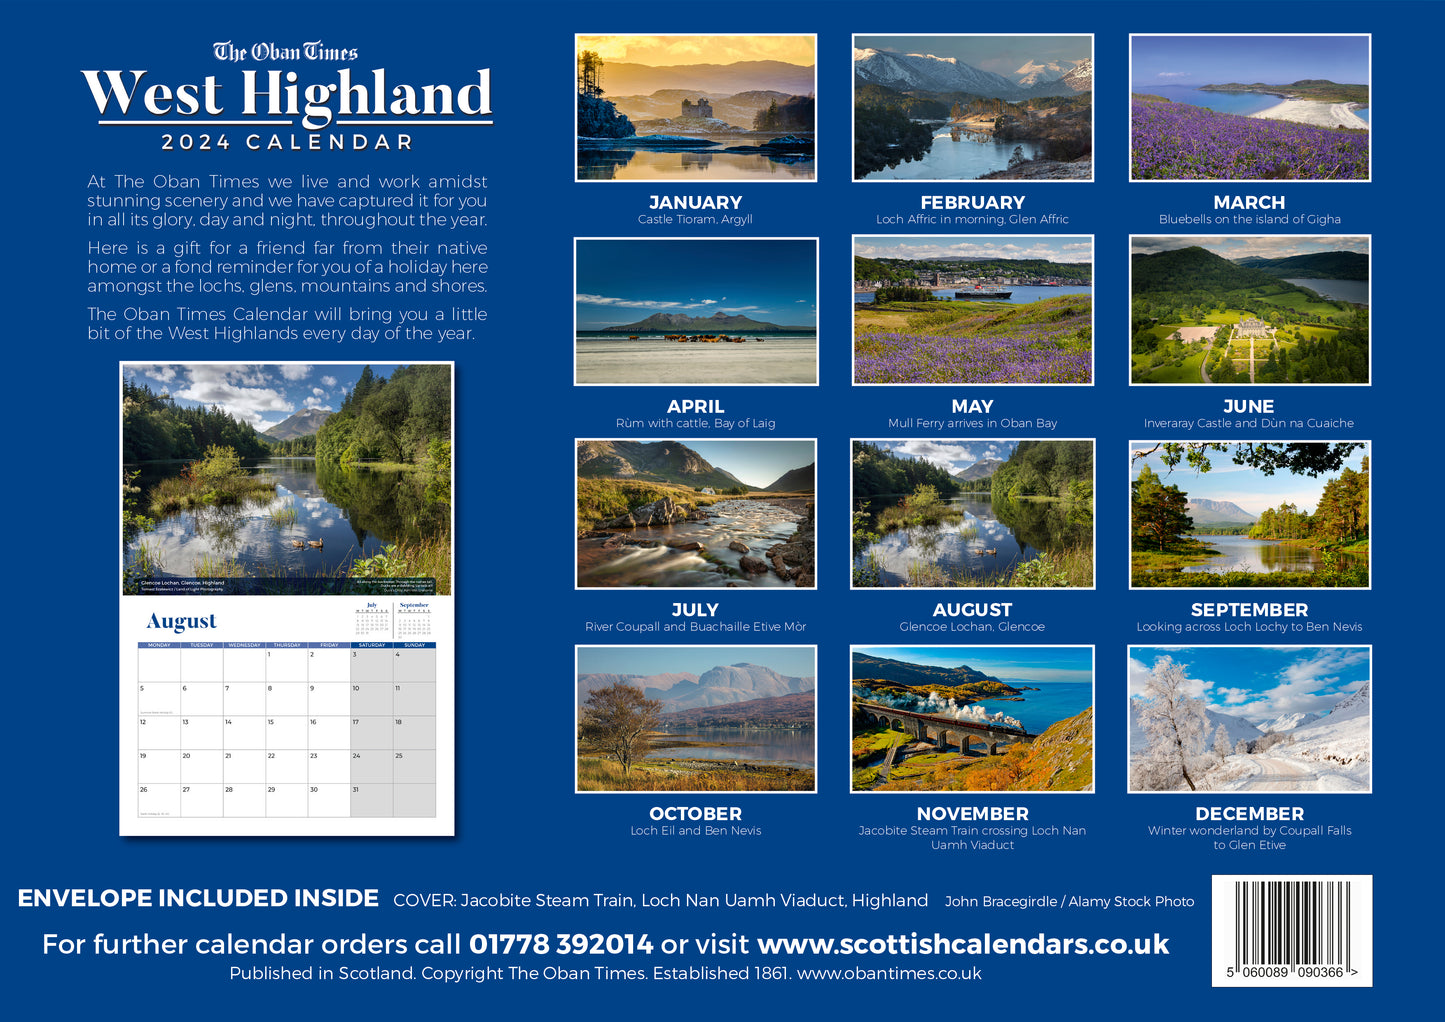 Oban Times' West Highland Calendar 2024 50% OFF